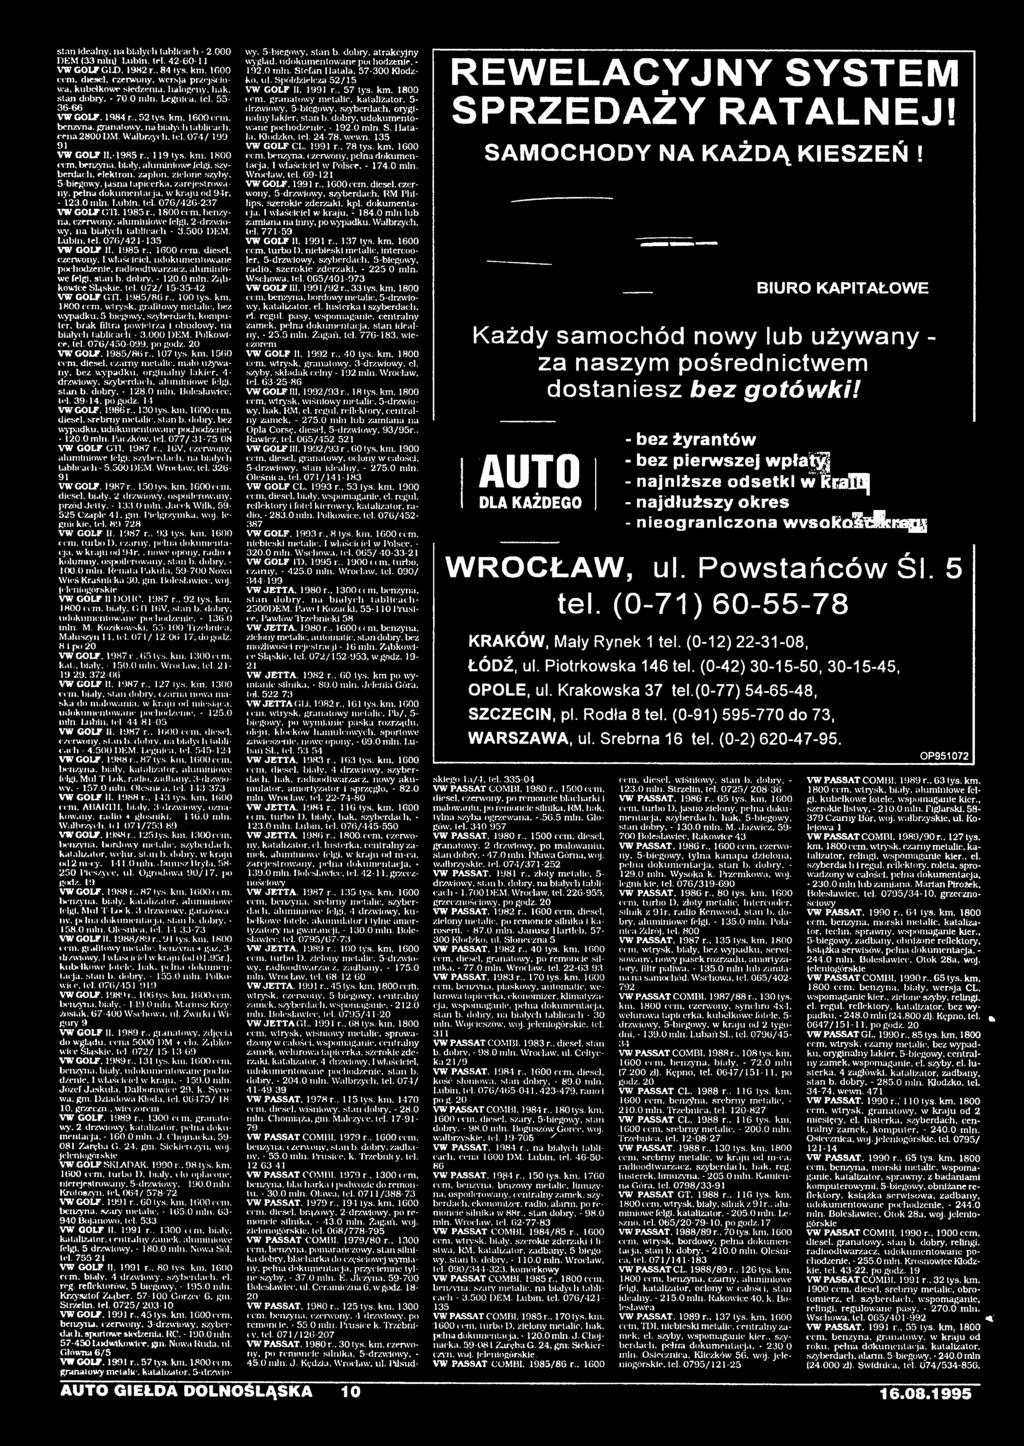 dobry. - 1.0 min. Ząbkowice Ślgskic. tel. 072/ 15-35-42 VW GOLF GTI. 1985/86 r.. 100 lys. km, 1800 ccm. wtrysk, grafitowy metalle, bez wypadku. 5 biegowy. szyberdac.!i, komputer.